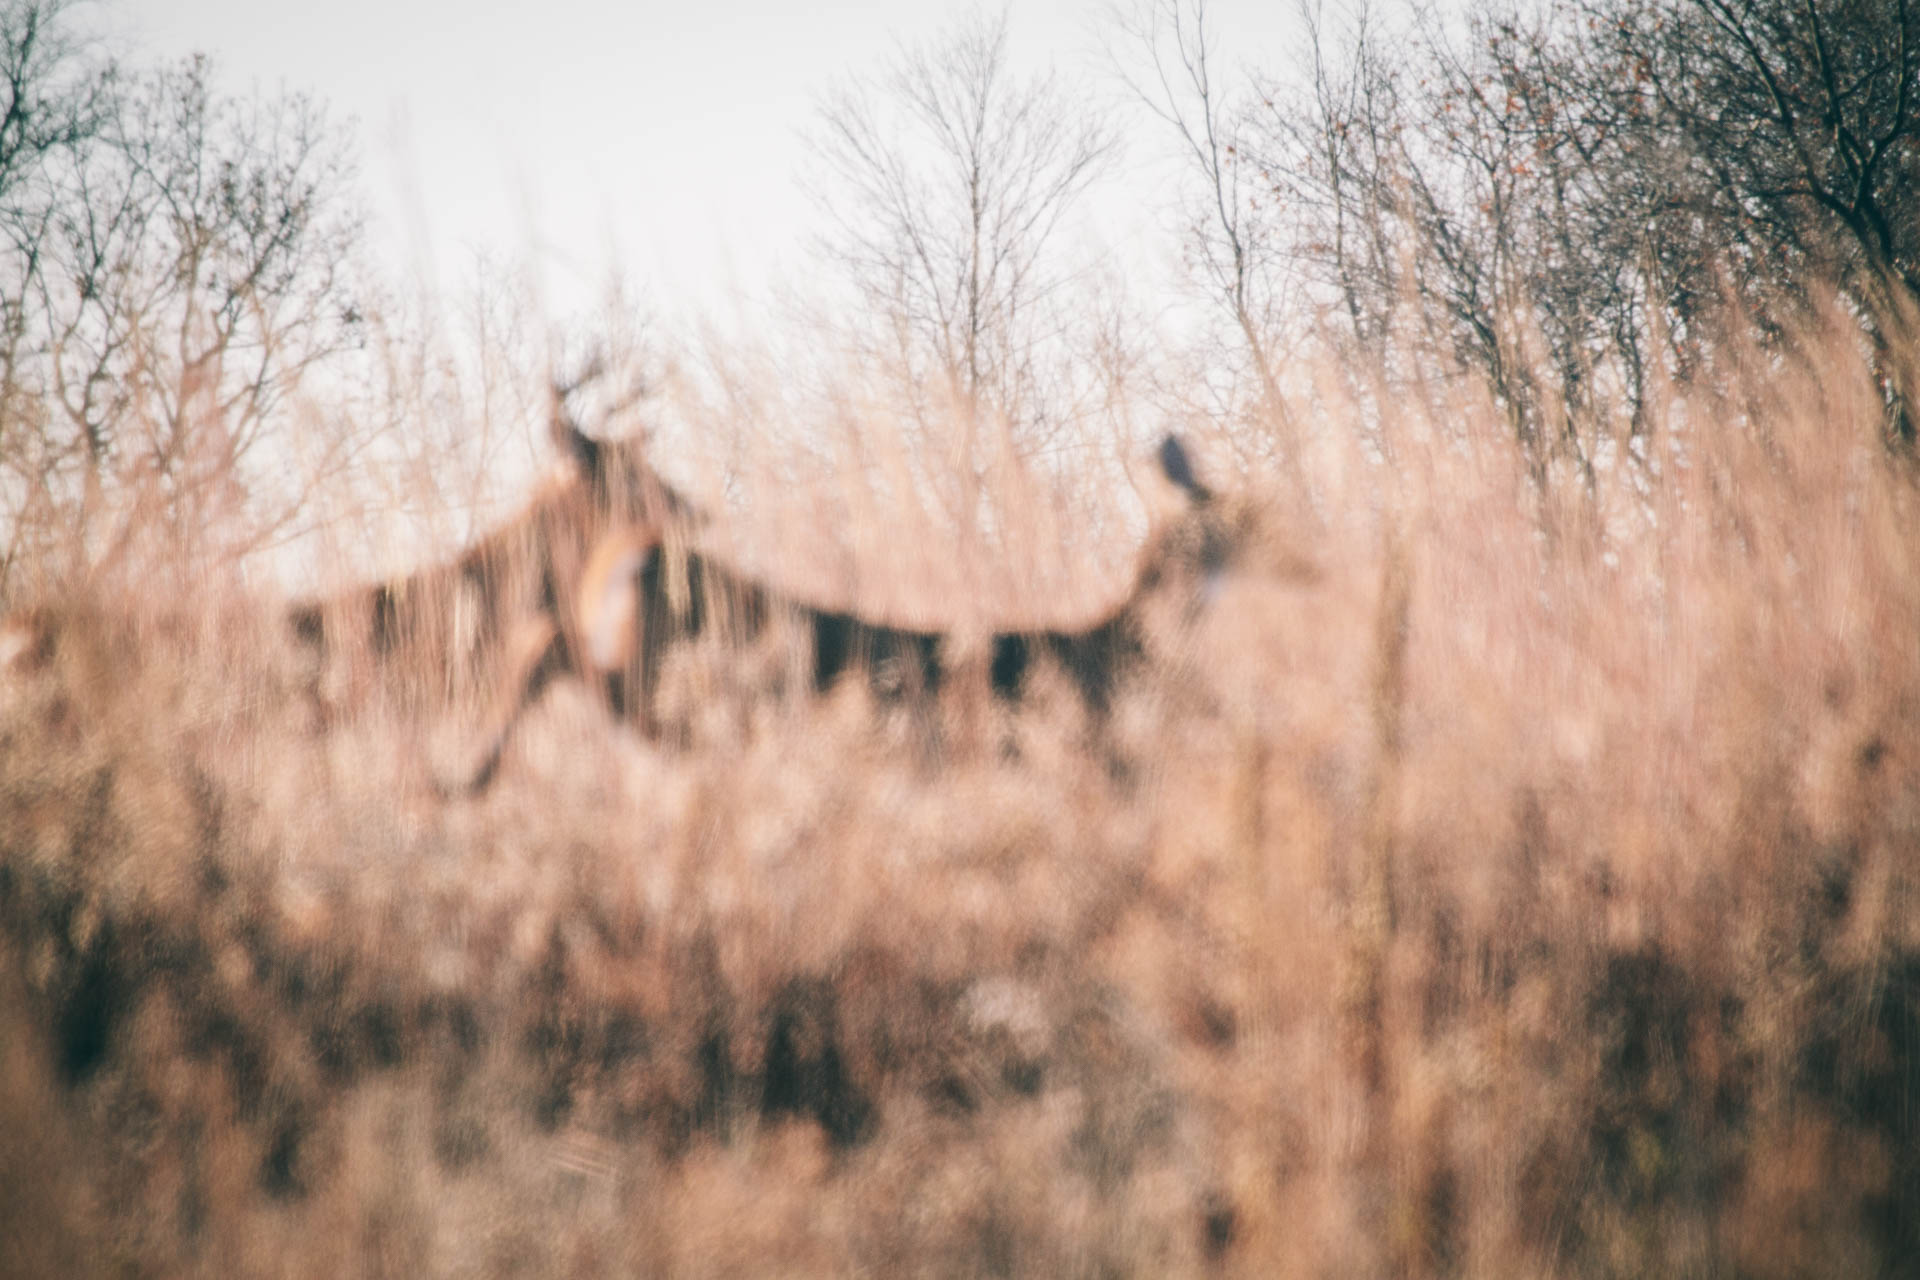 wisconsin-deer-hunting-whitetail-deer-running-field-travis-dewitz-6792.JPG